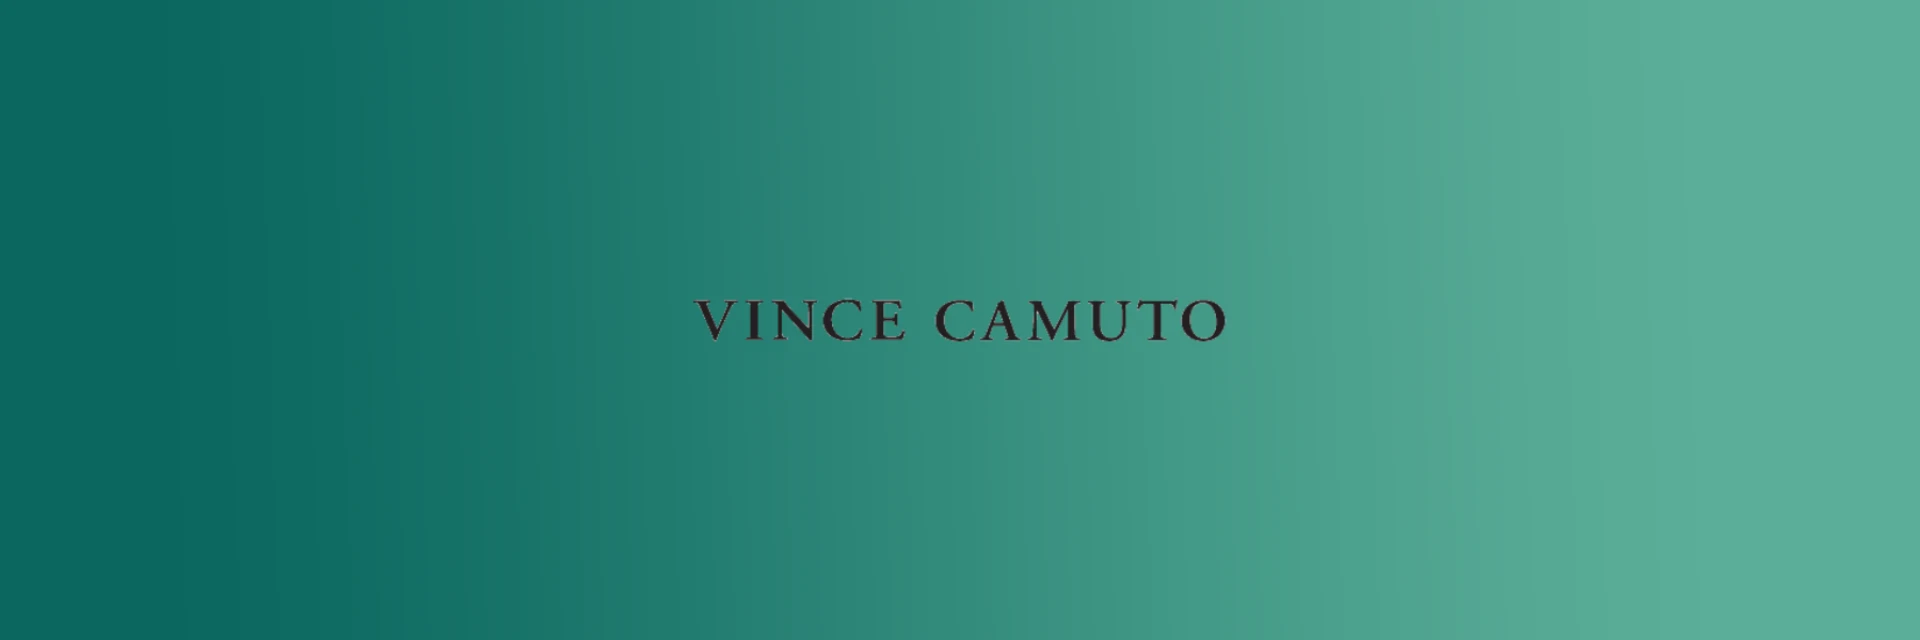 Image of Vince Camuto perfume brand logo